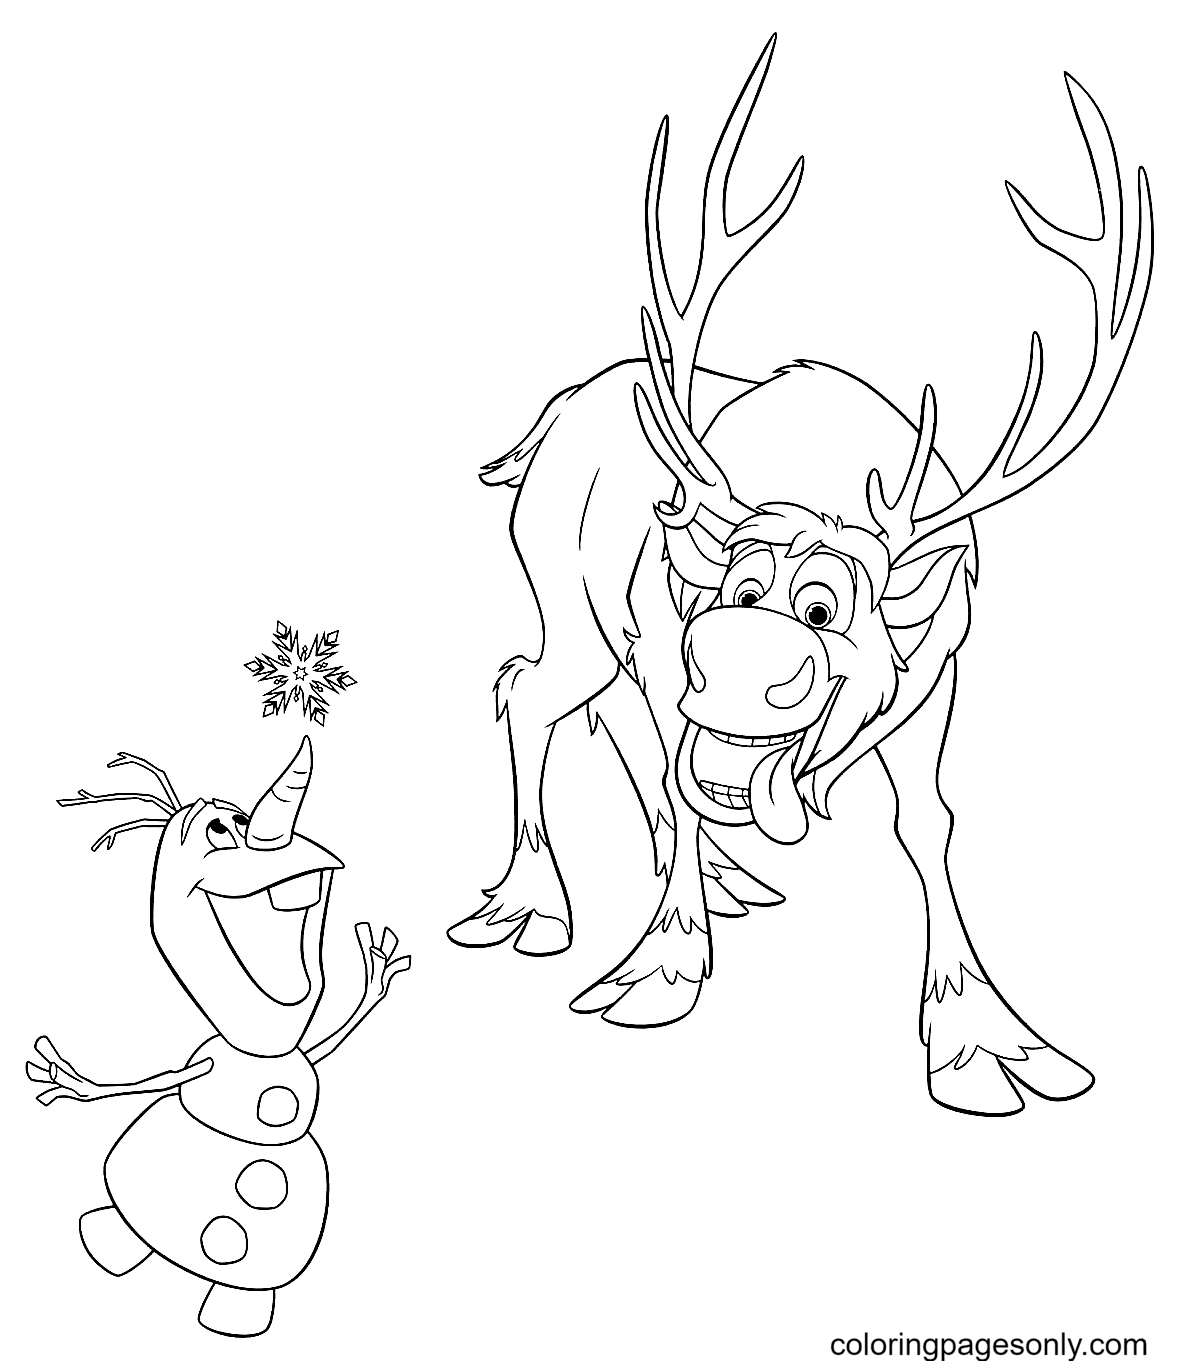 Sven y Olaf atrapan copos de nieve de Olaf